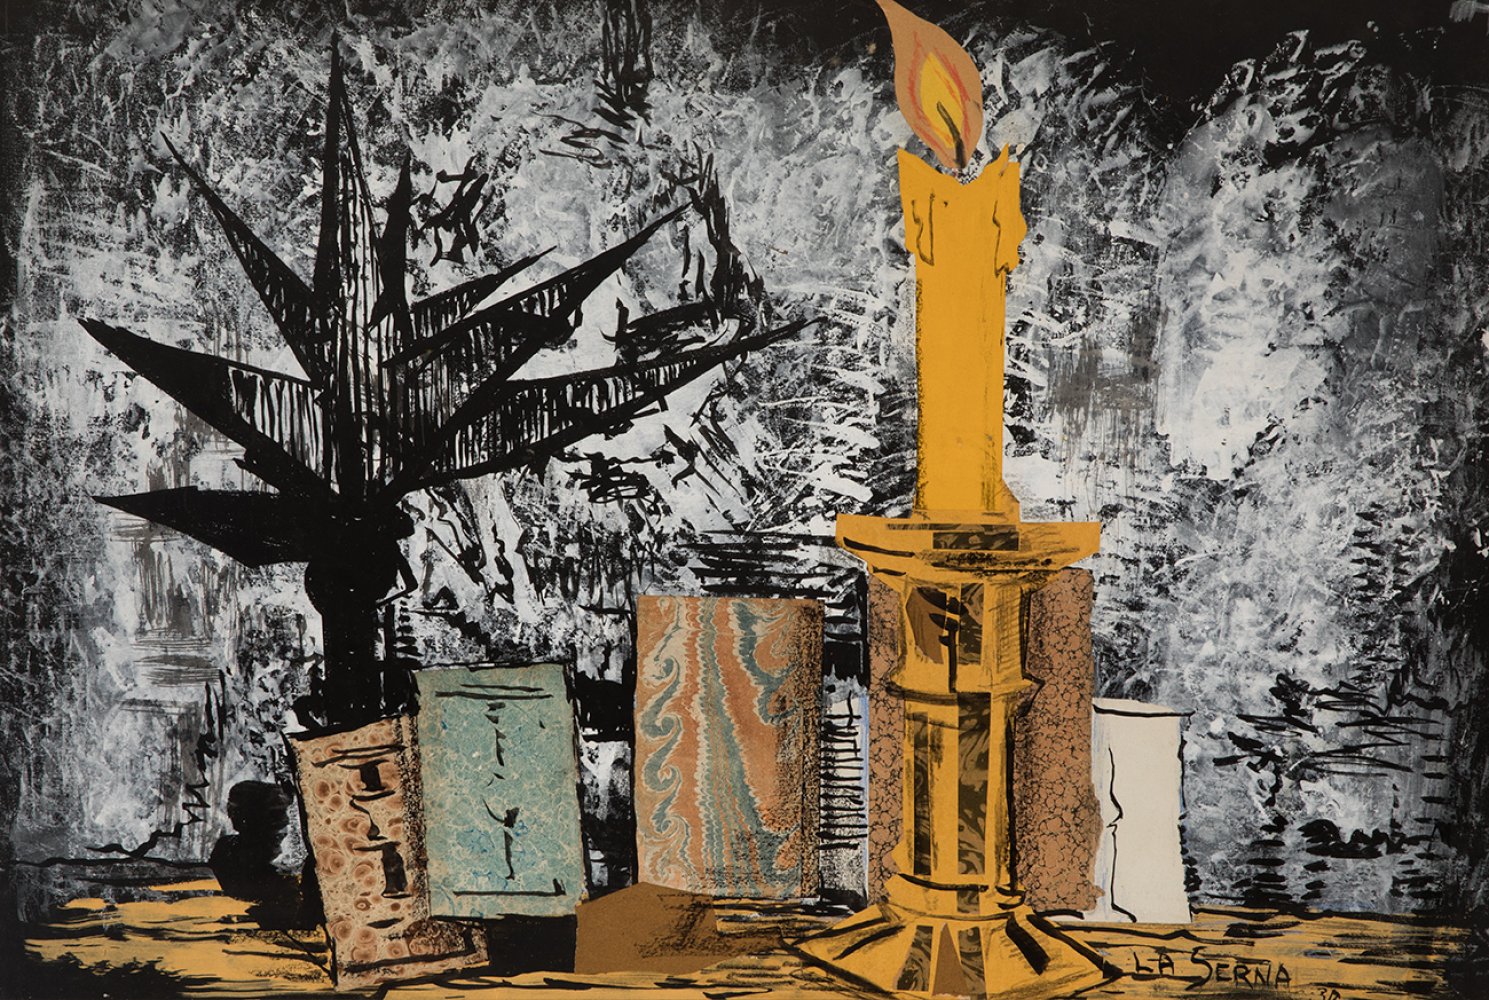 ISMAEL GONZÁLEZ DE LA SERNA (Guadix, Granada, 1898 - Paris, 1968).Untitled, 1930.Mixed media (